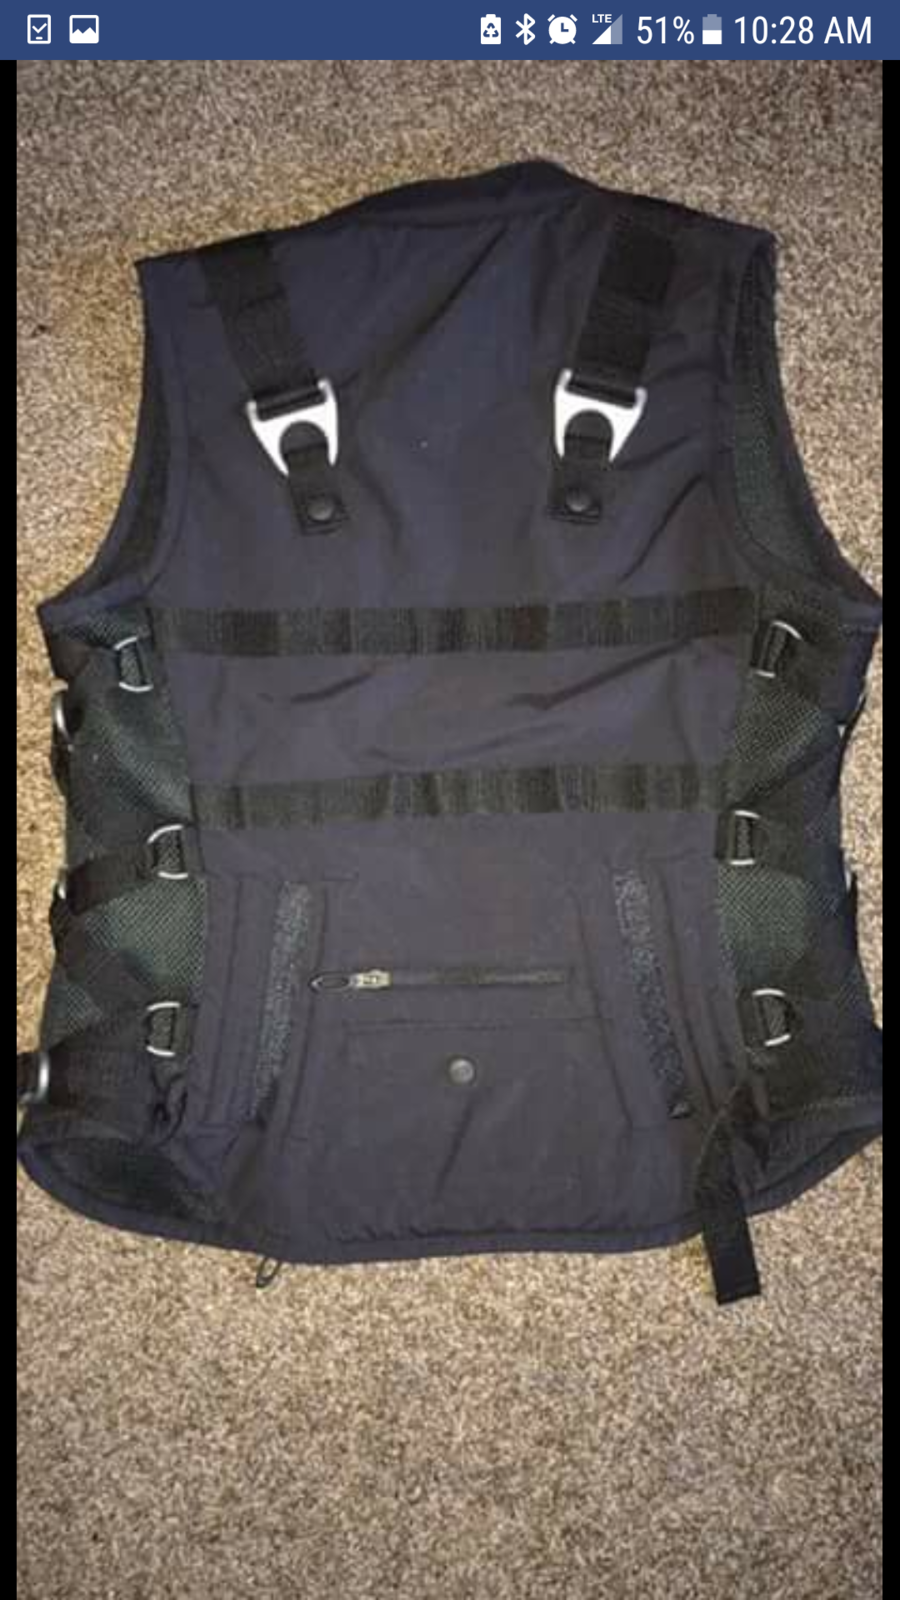 Tactical Vest Info Needed | Oakley Forum